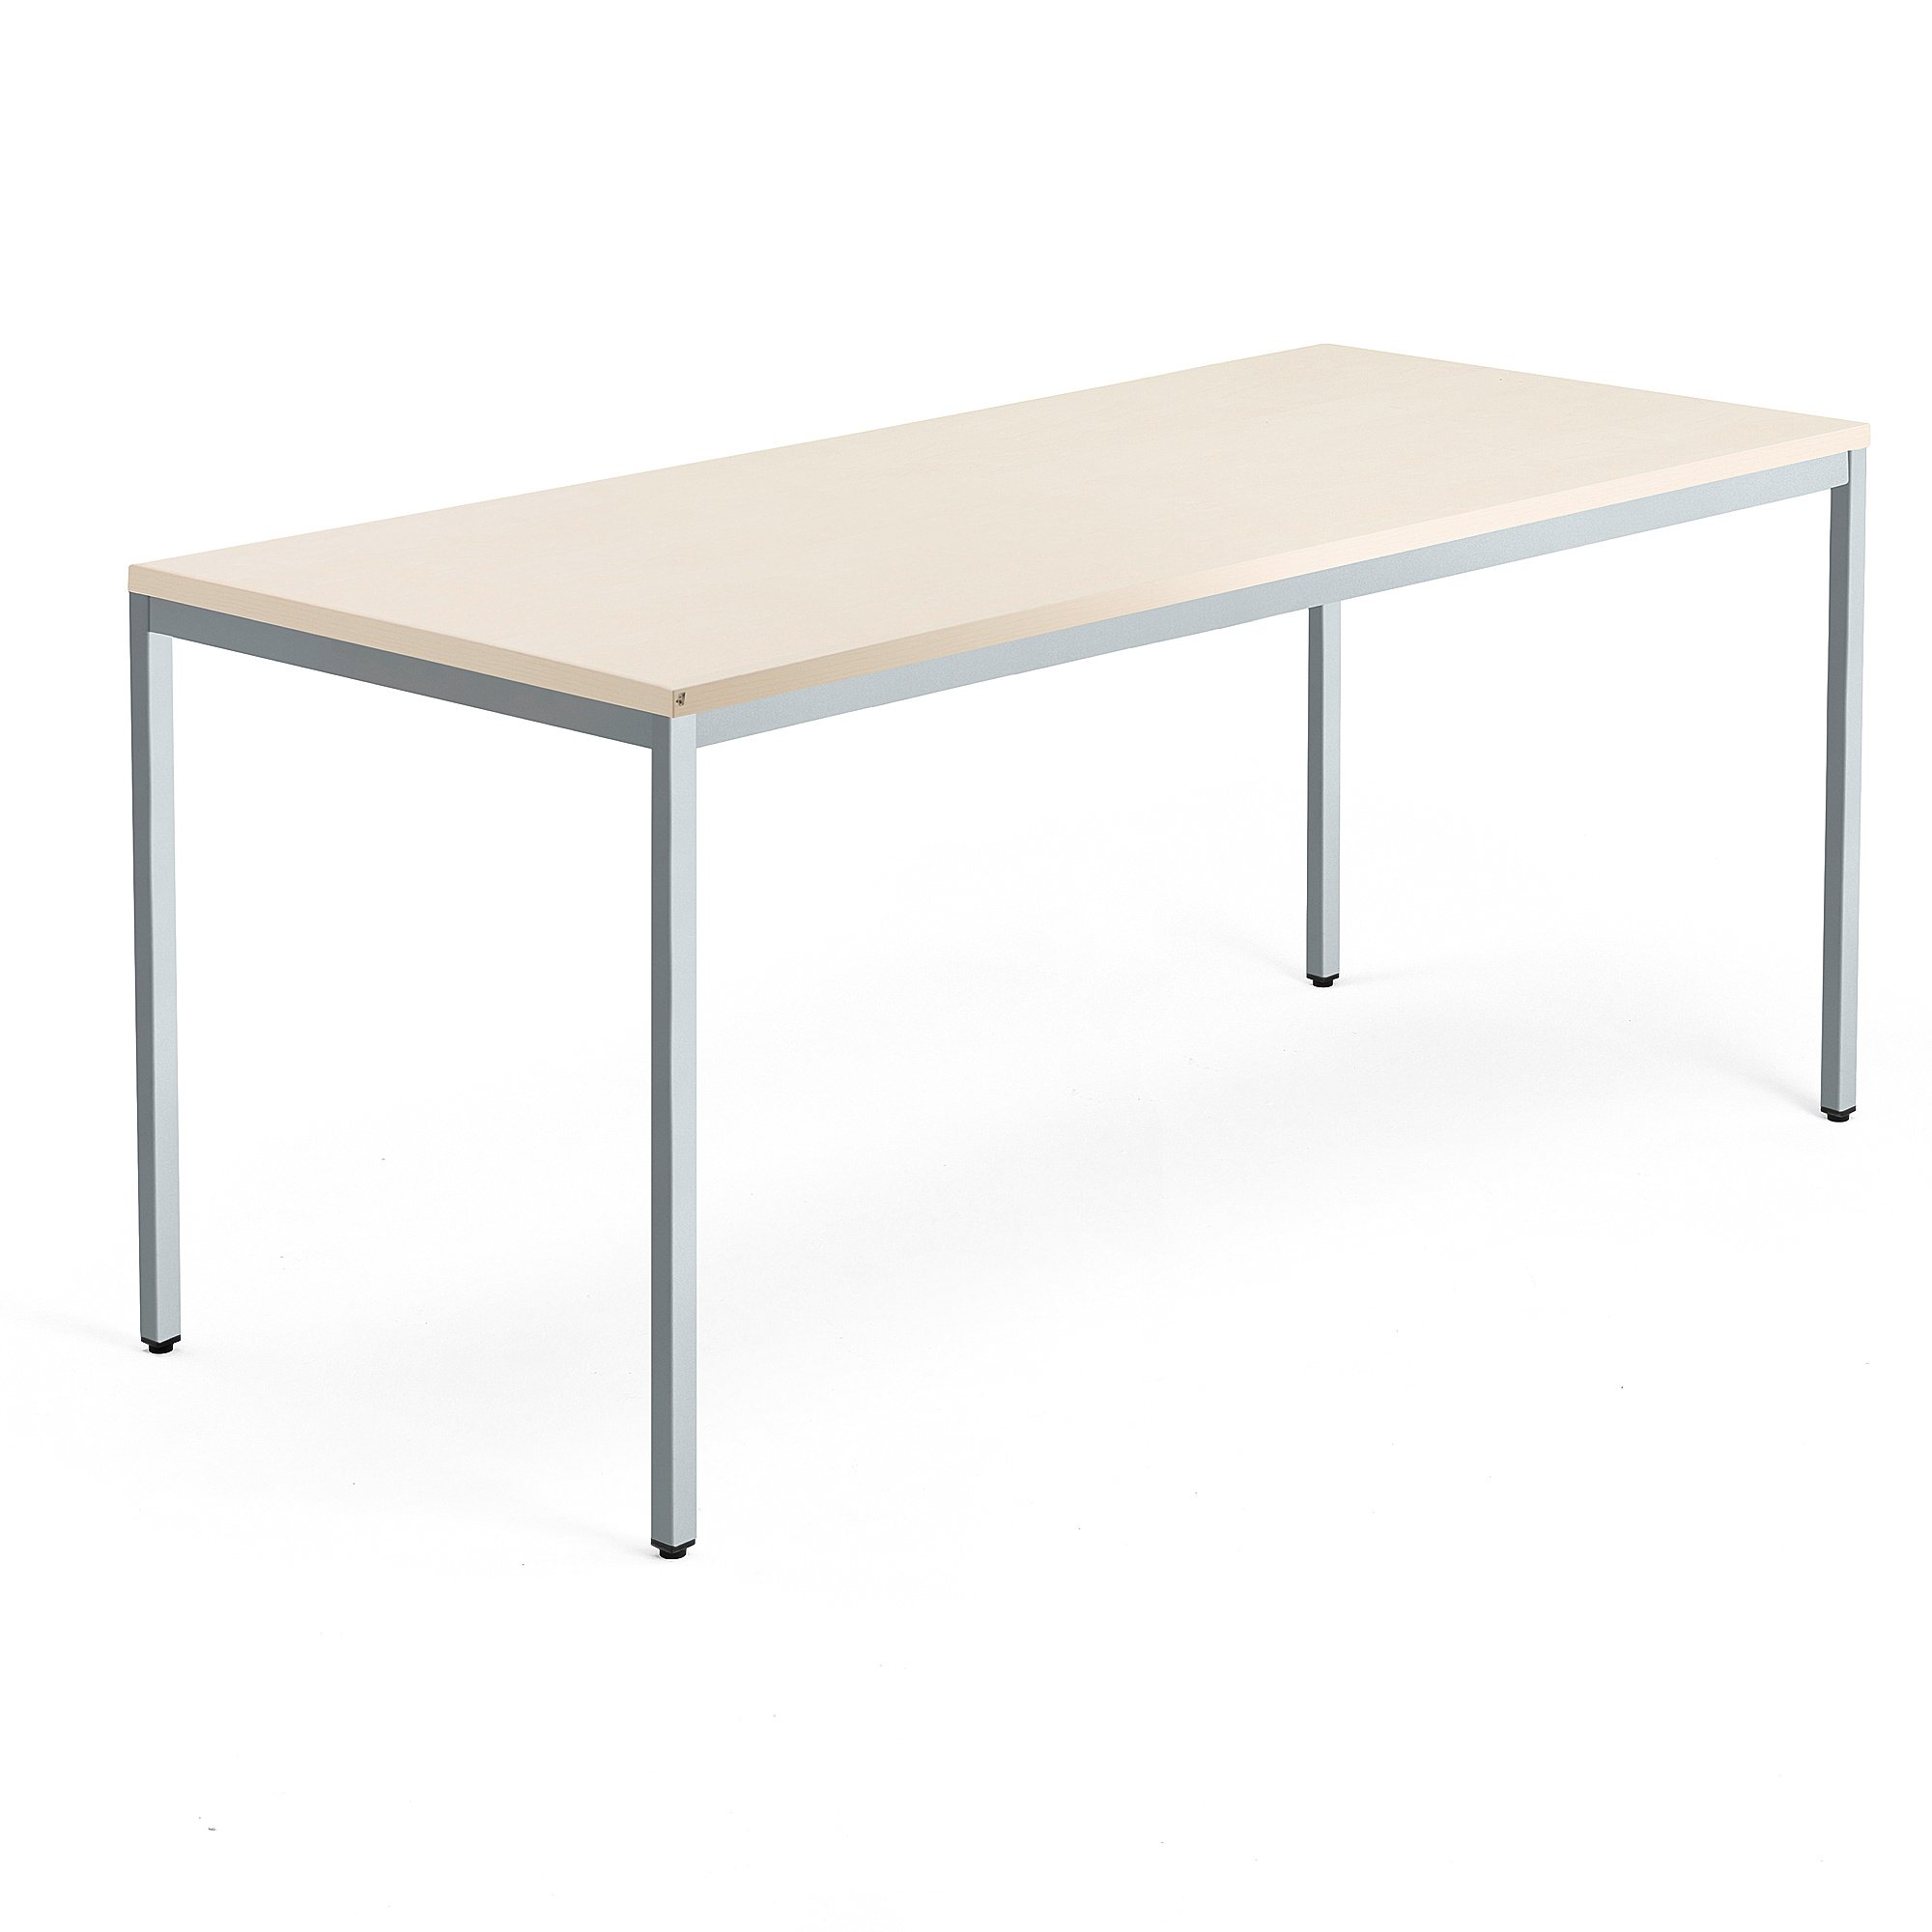 Psací stůl QBUS, 4 nohy, 1800x800 mm, stříbrný rám, bříza